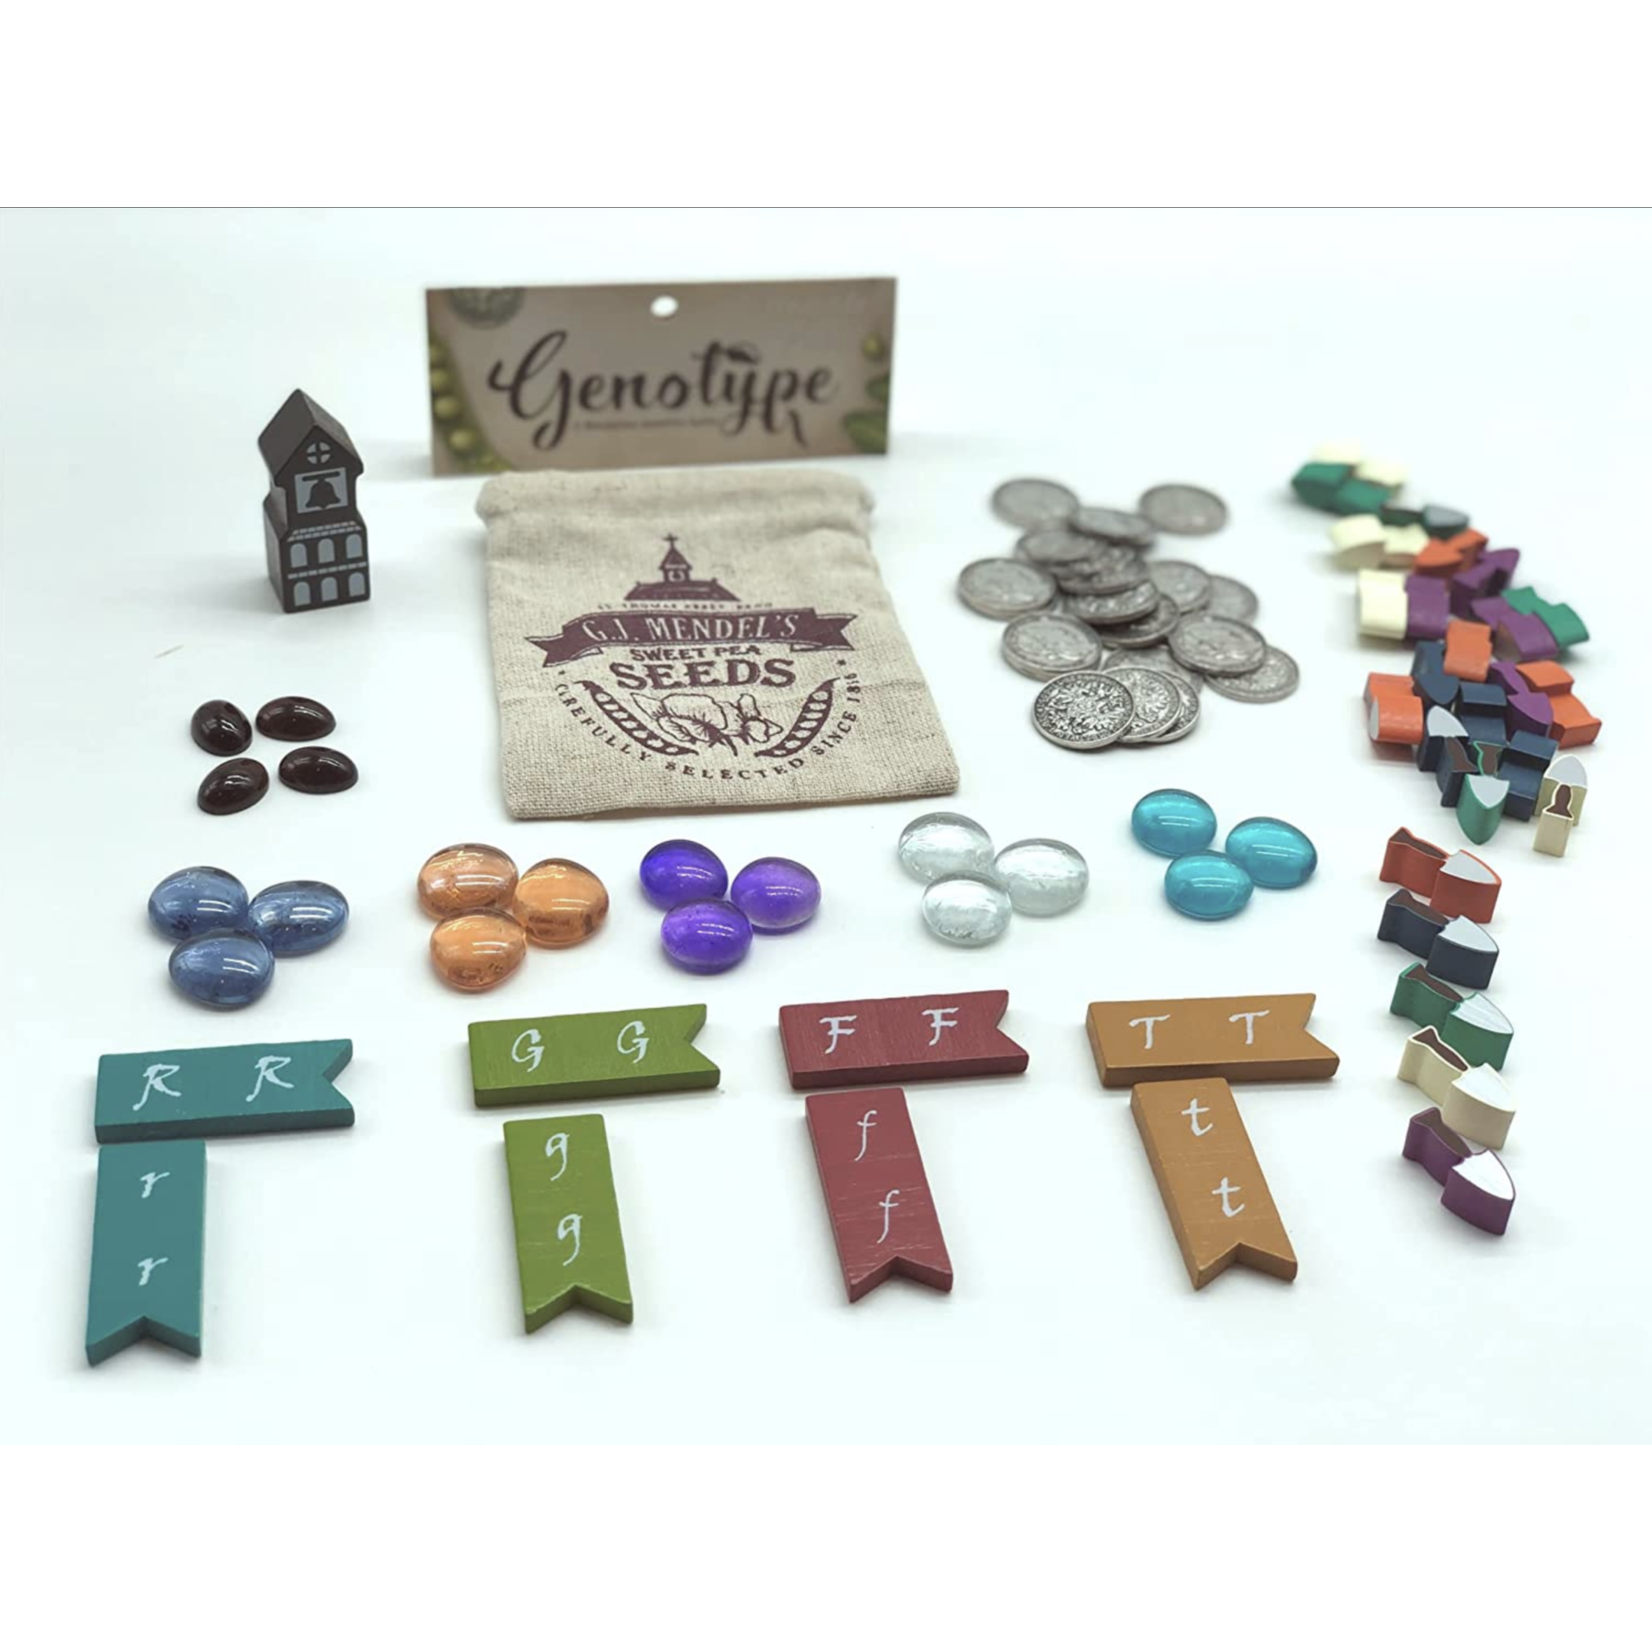 Genius Games Genotype Upgrade Pack